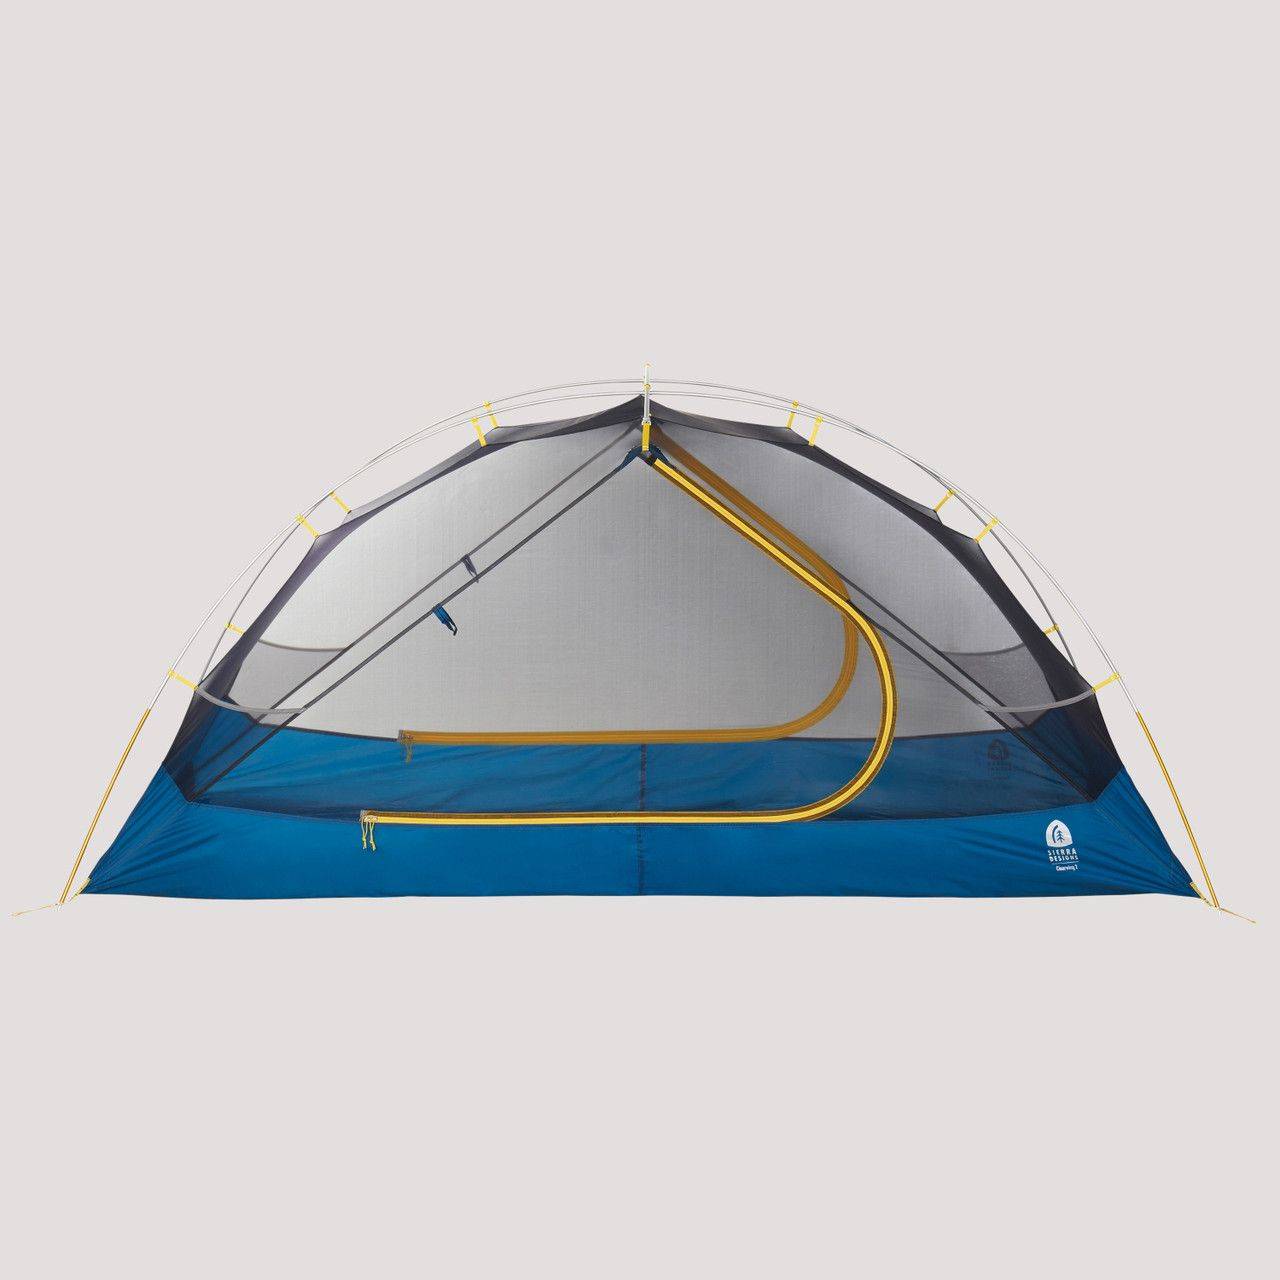 户外徒步露营最佳之选,全球十大顶级轻量化帐篷